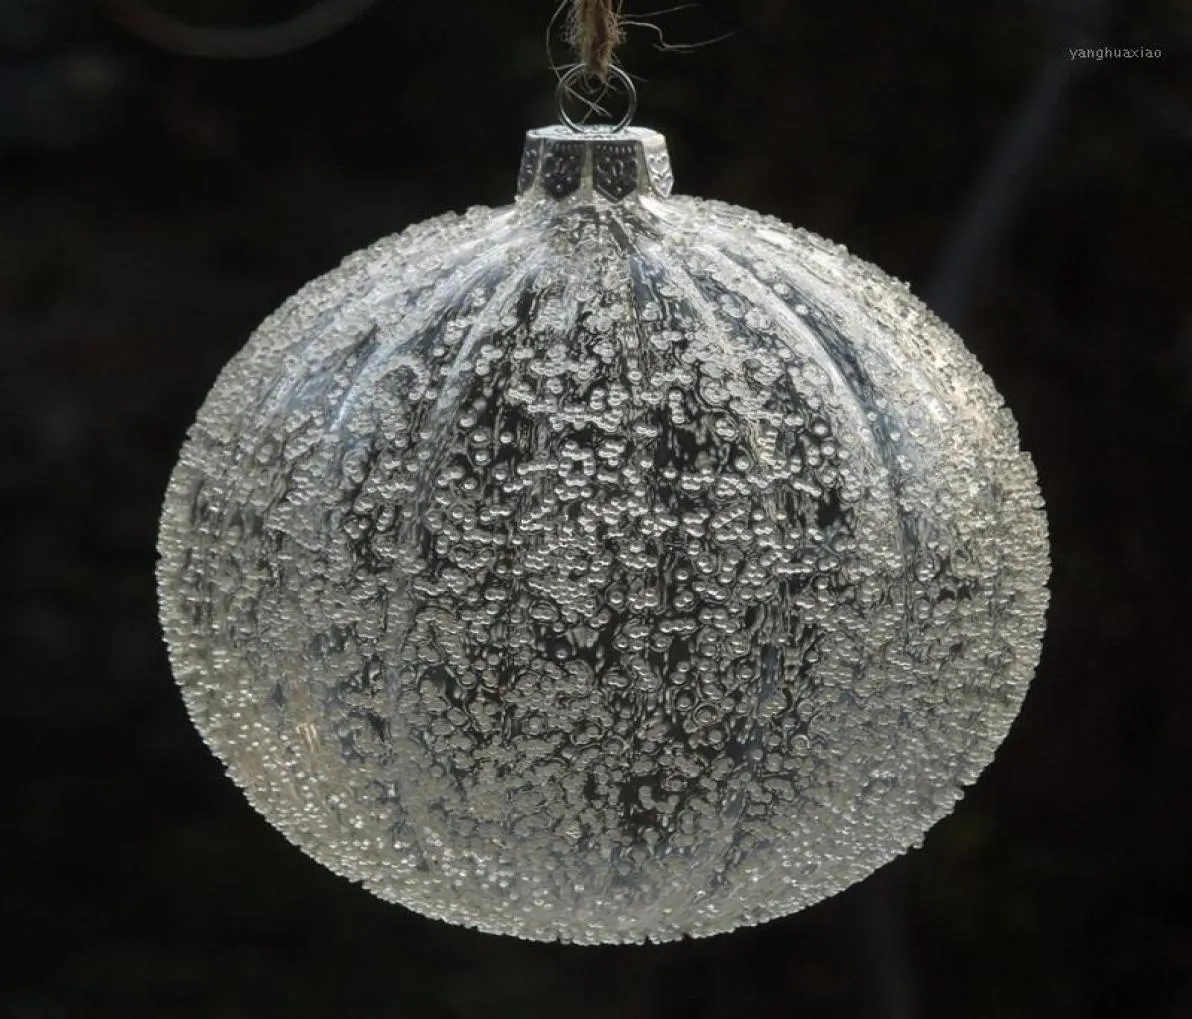 크리스마스 장식 직경 6cm 줄무늬 유리 공 투명한 지구 칩과 칩 나무 펜던트 장식품 Ball14770565